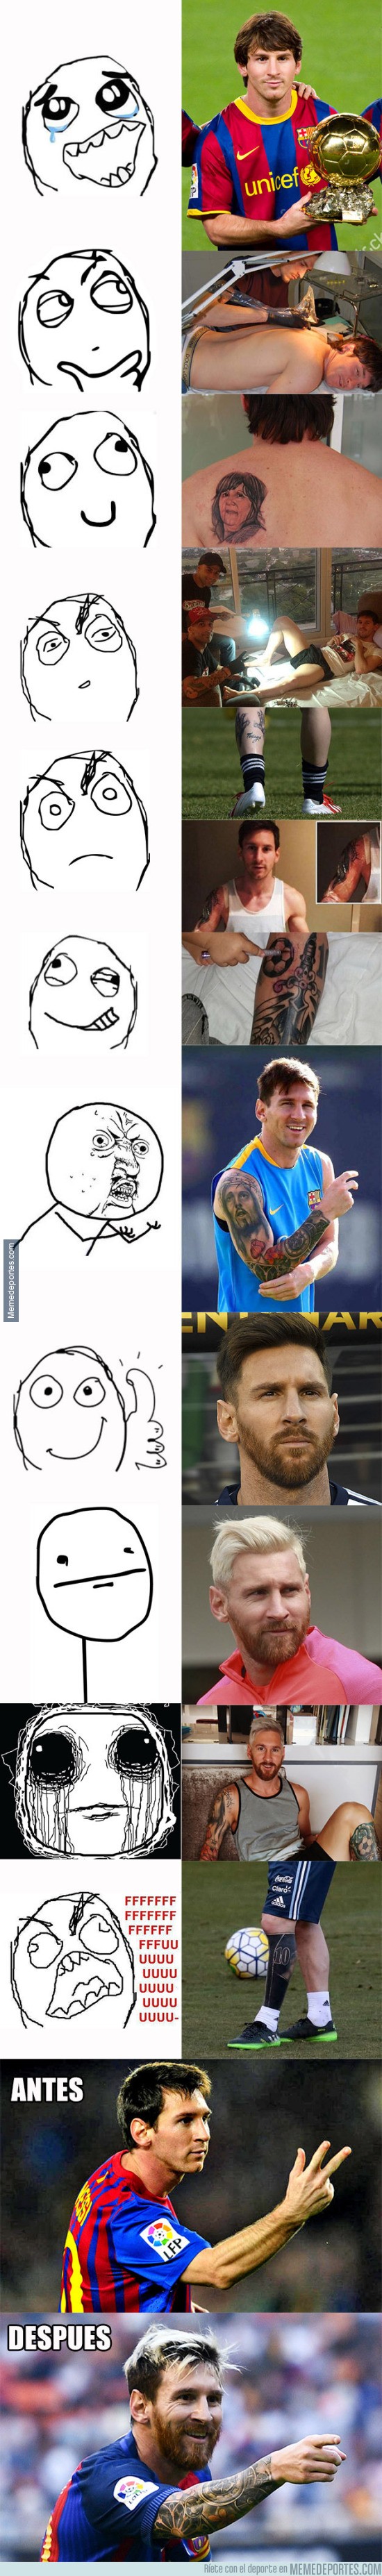 925449 - La evolución de Messi en pocos años